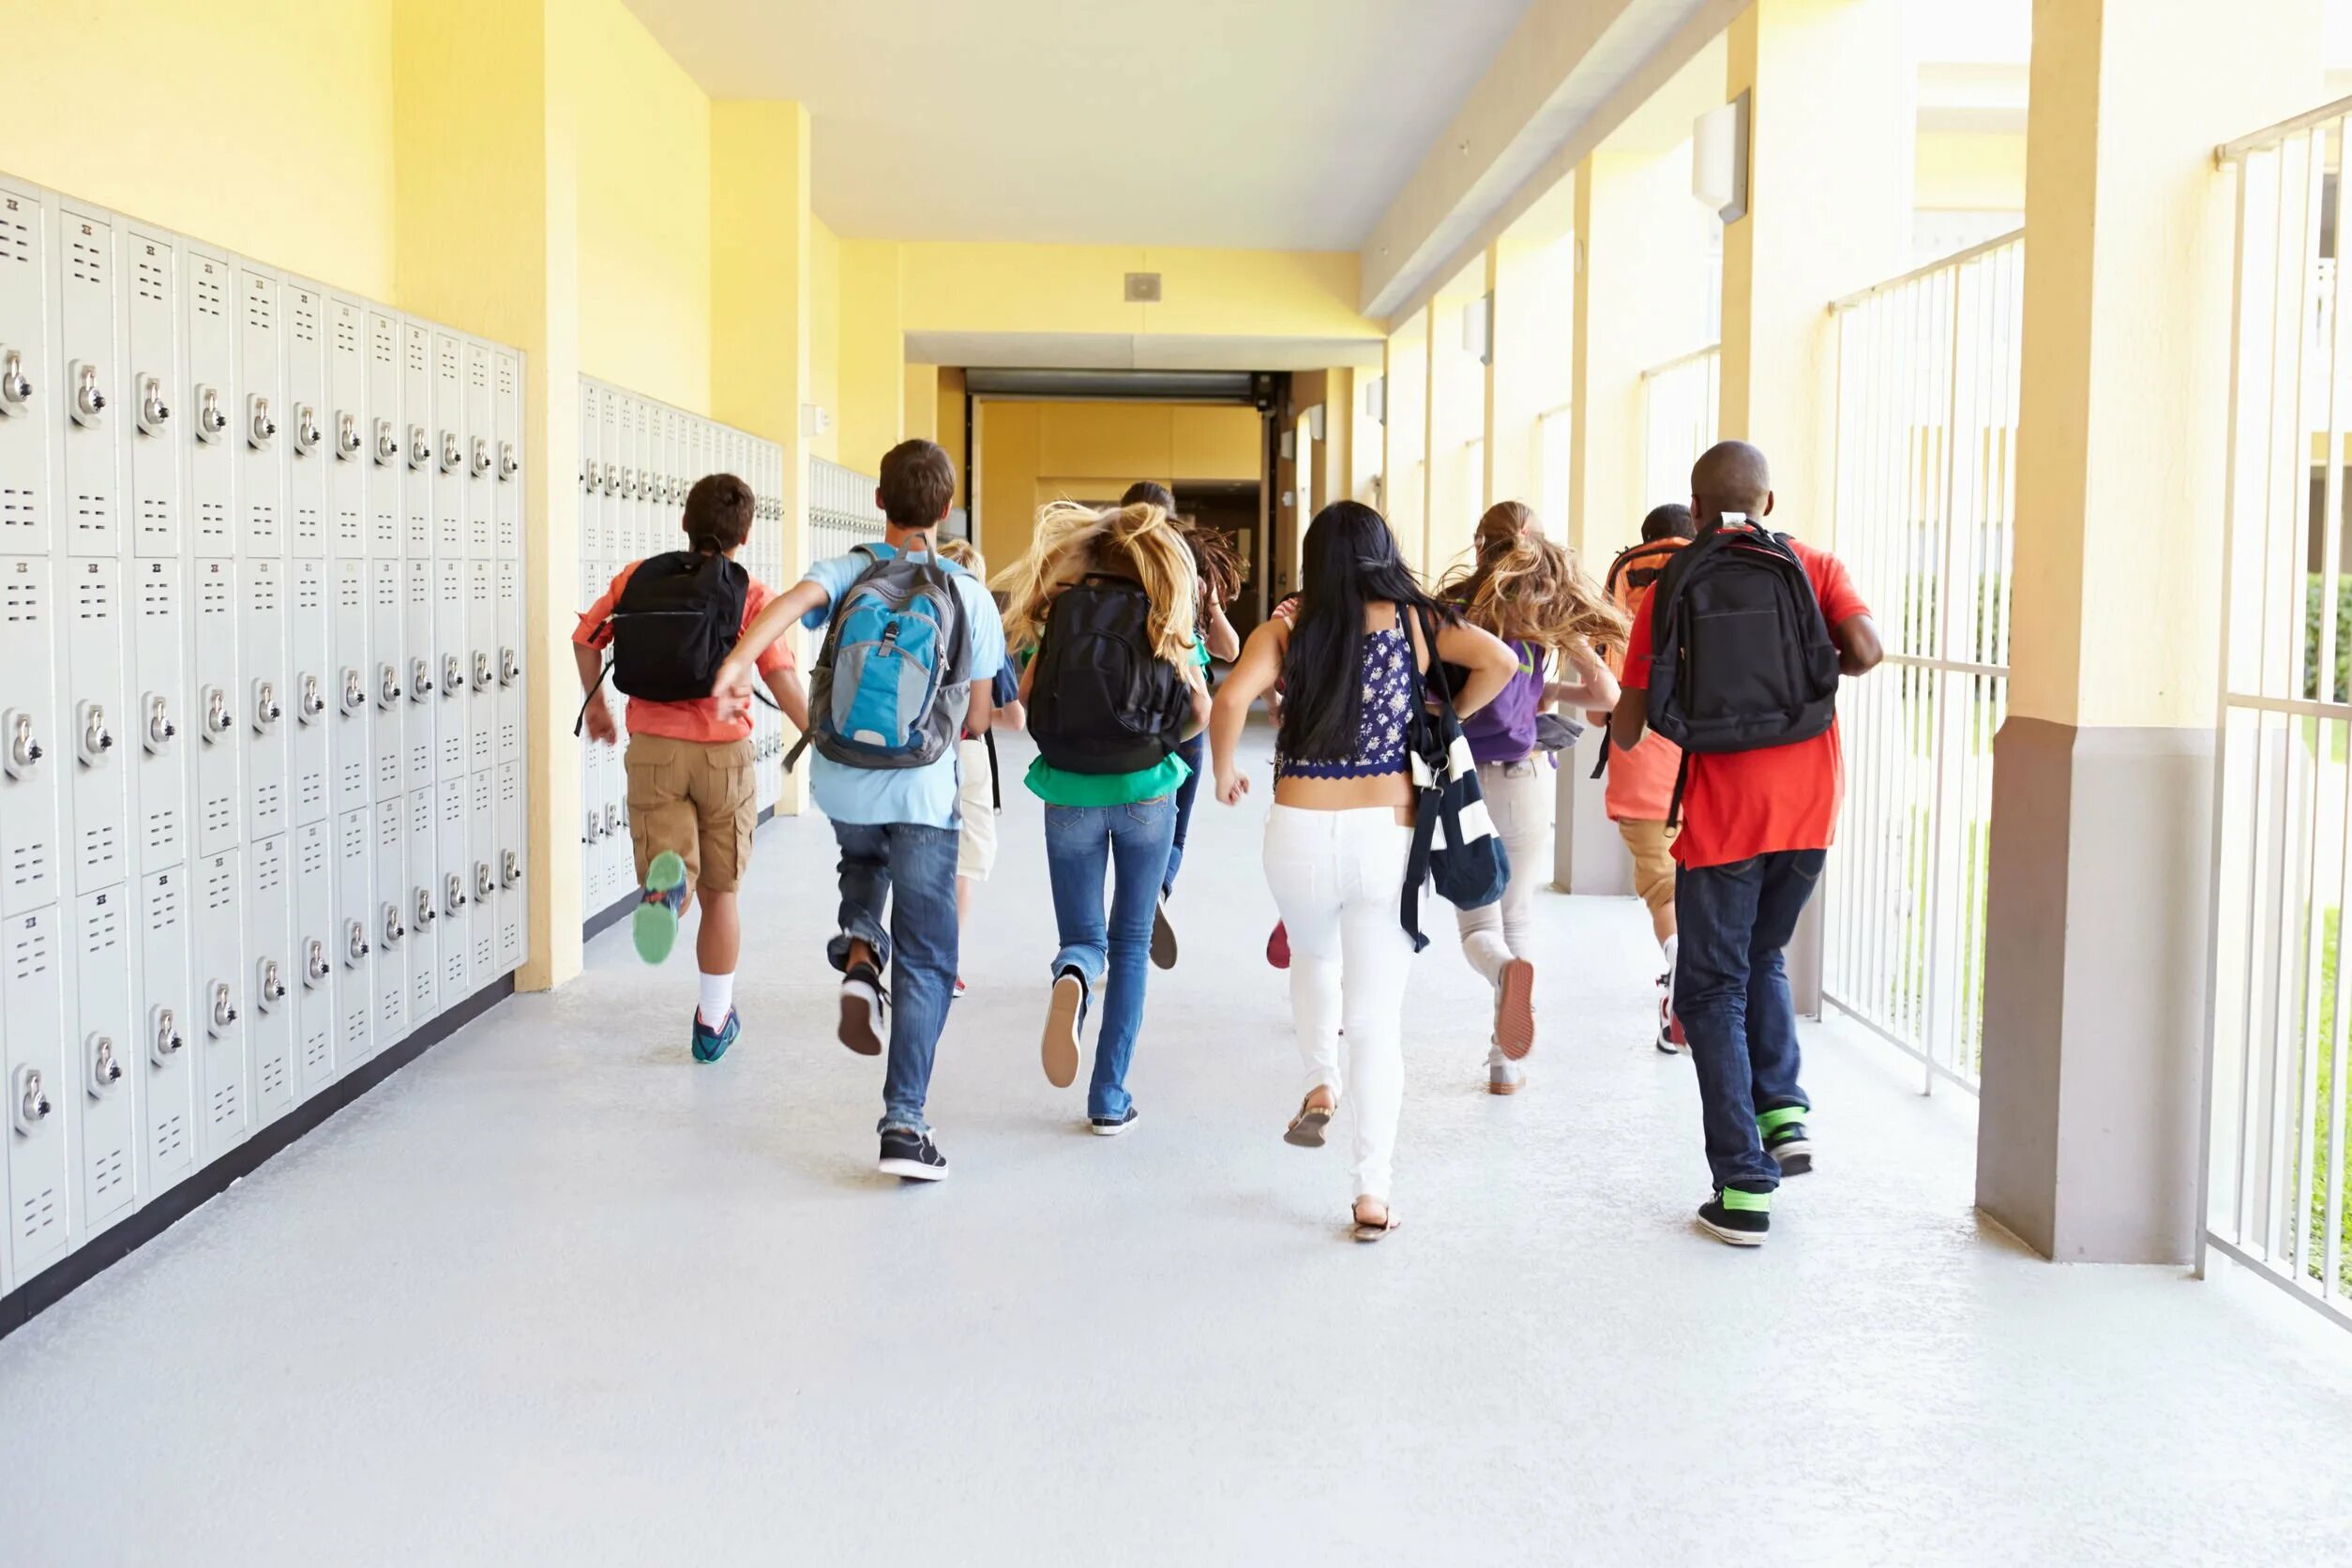 Школьный коридор американской школы. Школьный коридор с учениками. Школьный коридор с людьми. Школьники в коридоре школы.